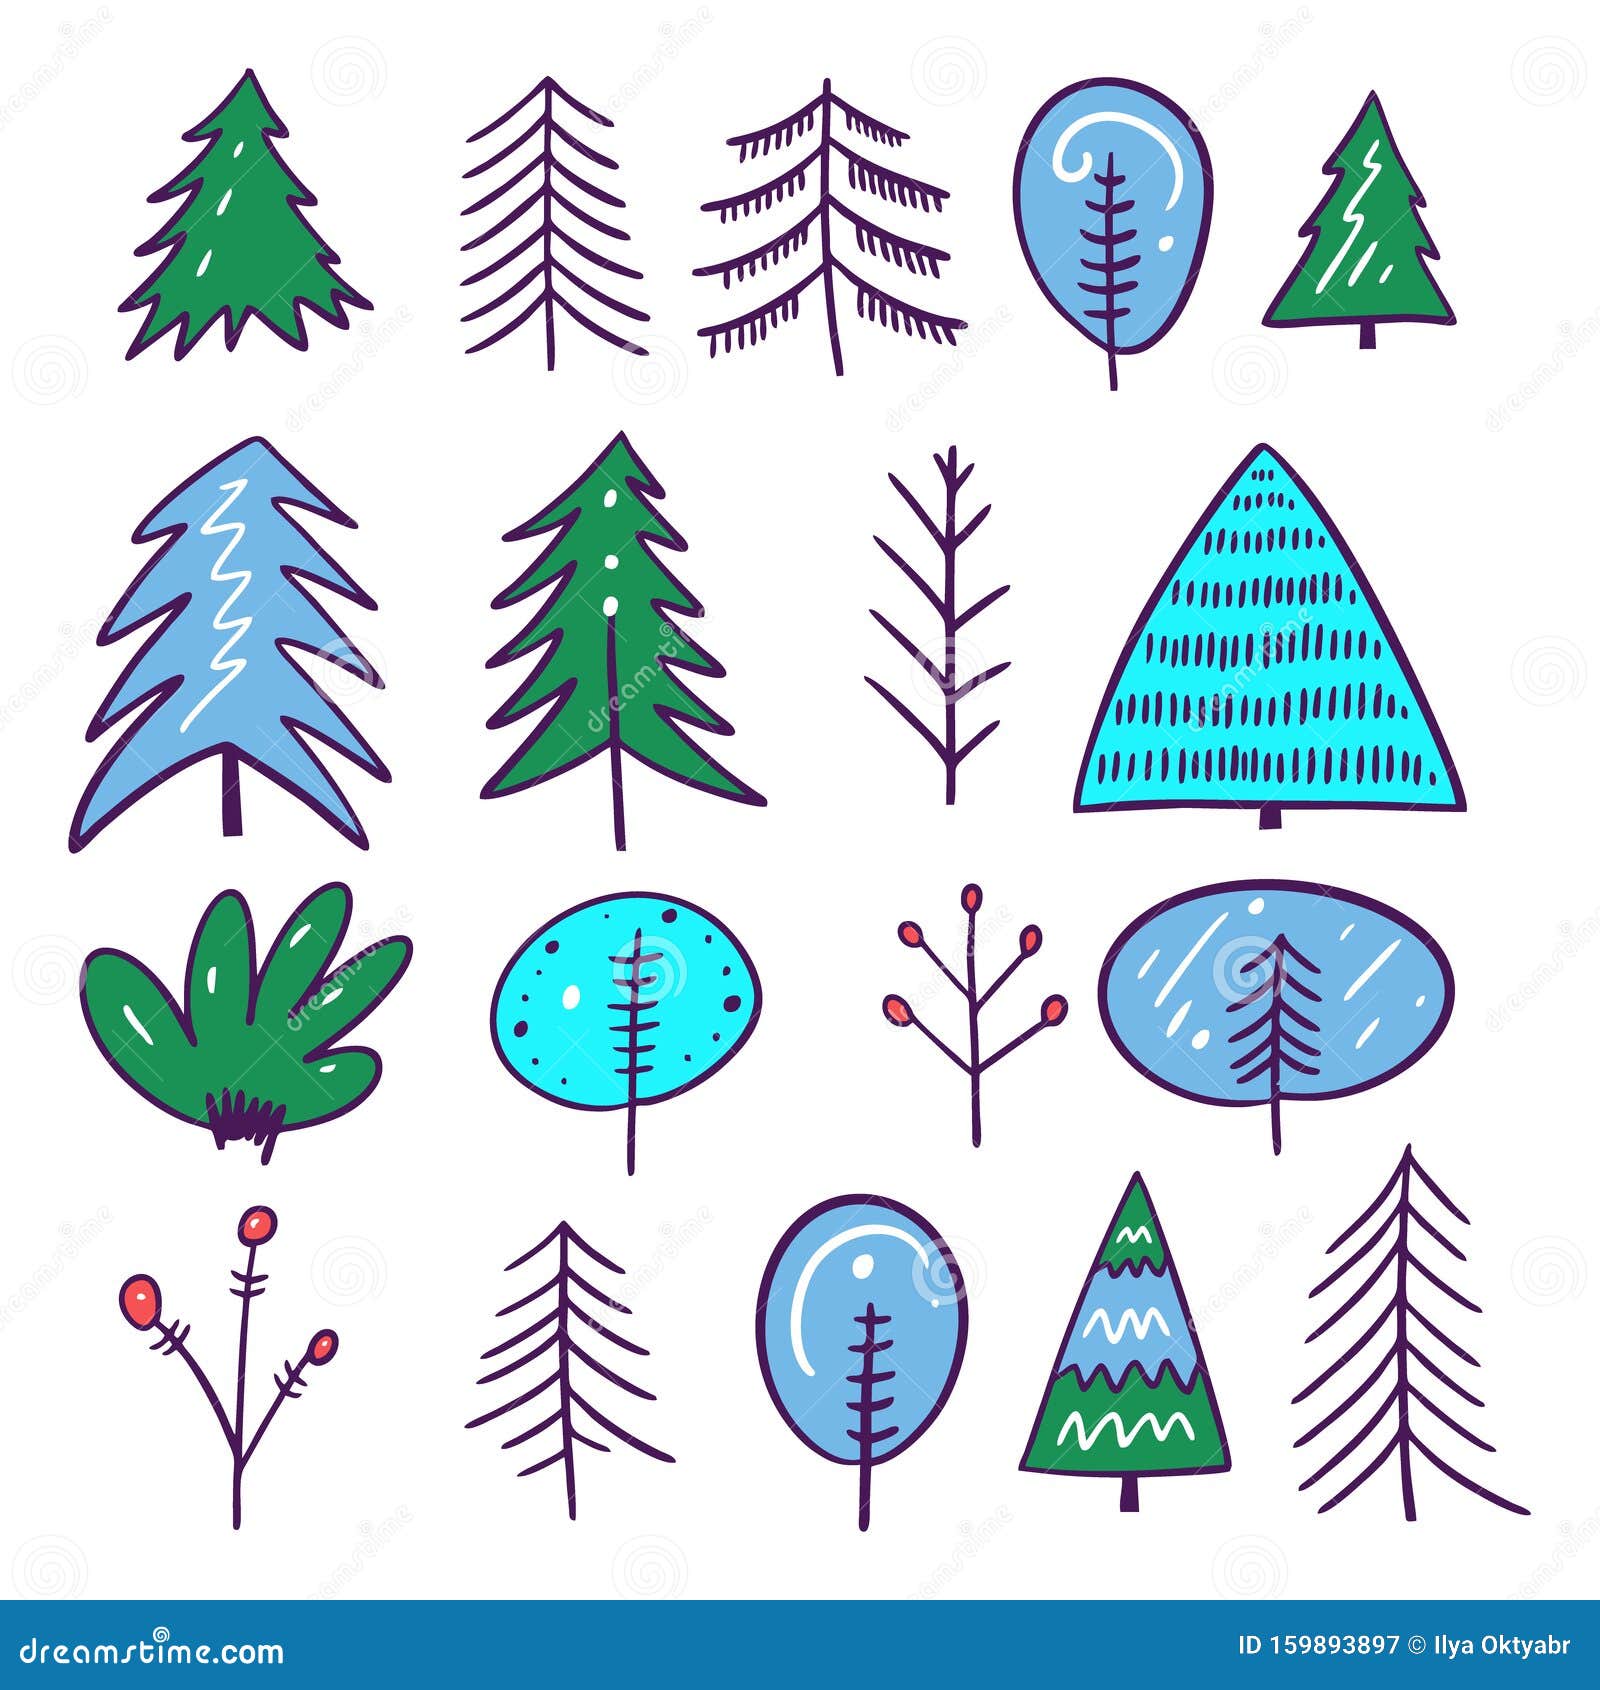 Winter Tree Vector Illustration Set. Cartoon Style. Isolated on White